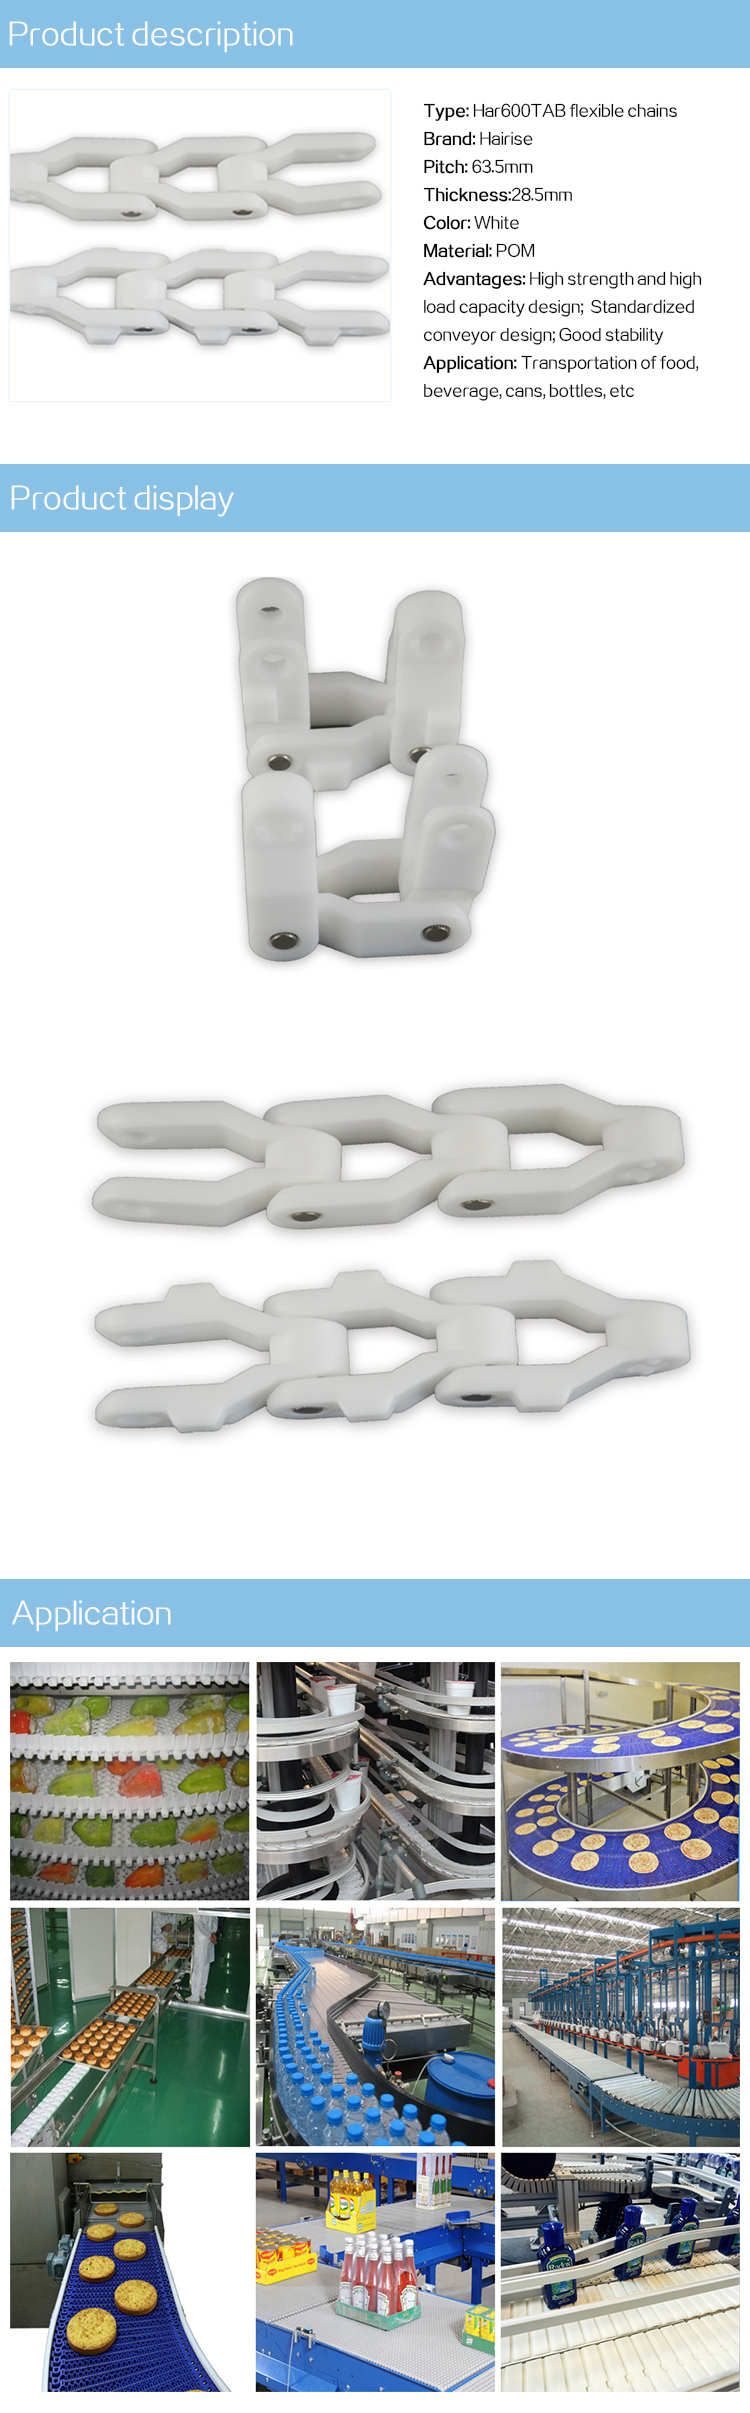 Har600 series flexible chains.jpg